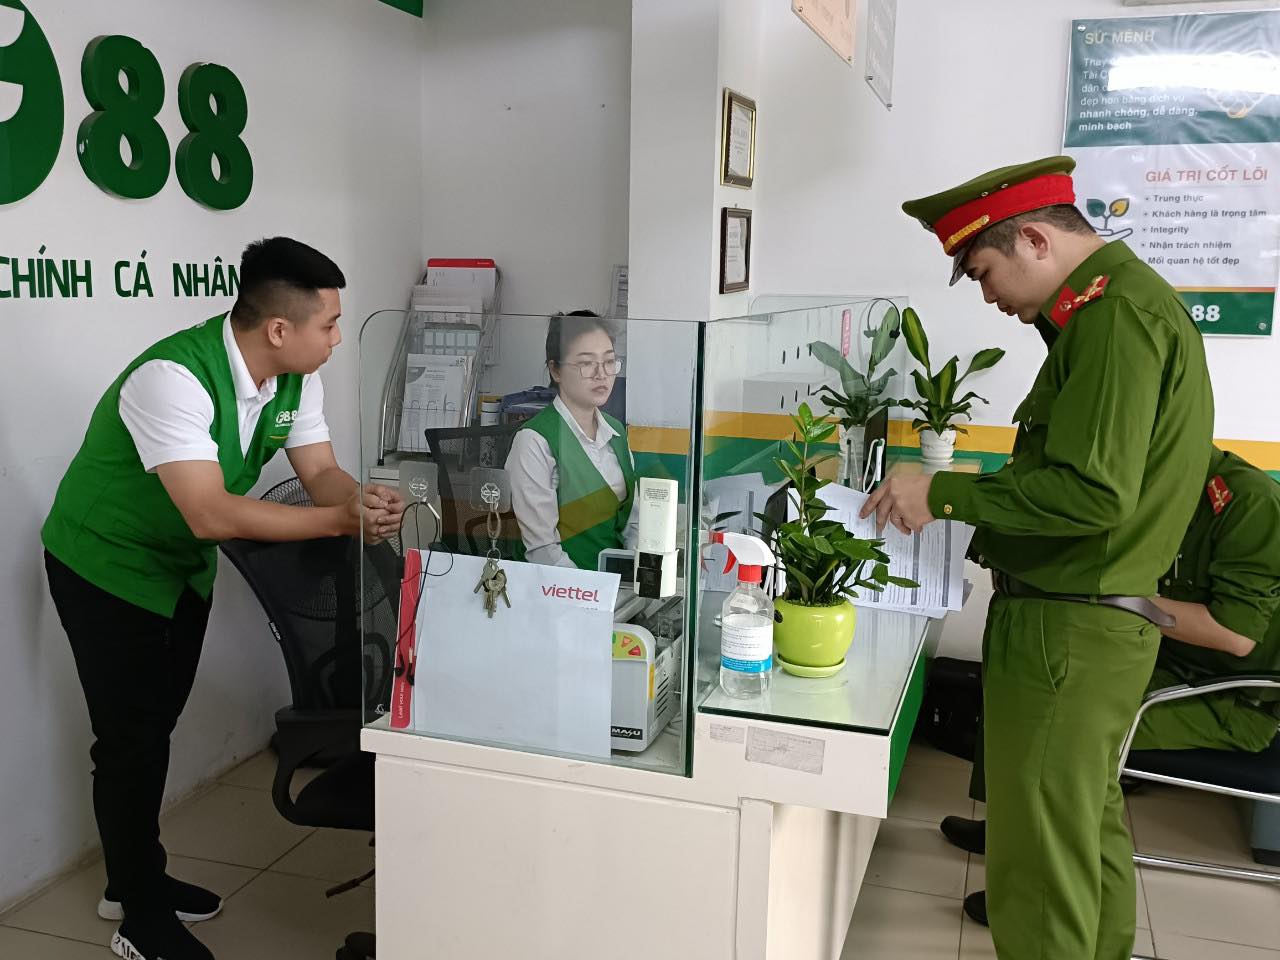 Công an kiểm tra hành chính tại cơ sở&nbsp;kinh doanh của&nbsp;Chi nhánh Công ty Cổ phần kinh doanh F8 tại Bắc Giang trên đường Xương Giang - thành phố Bắc Giang